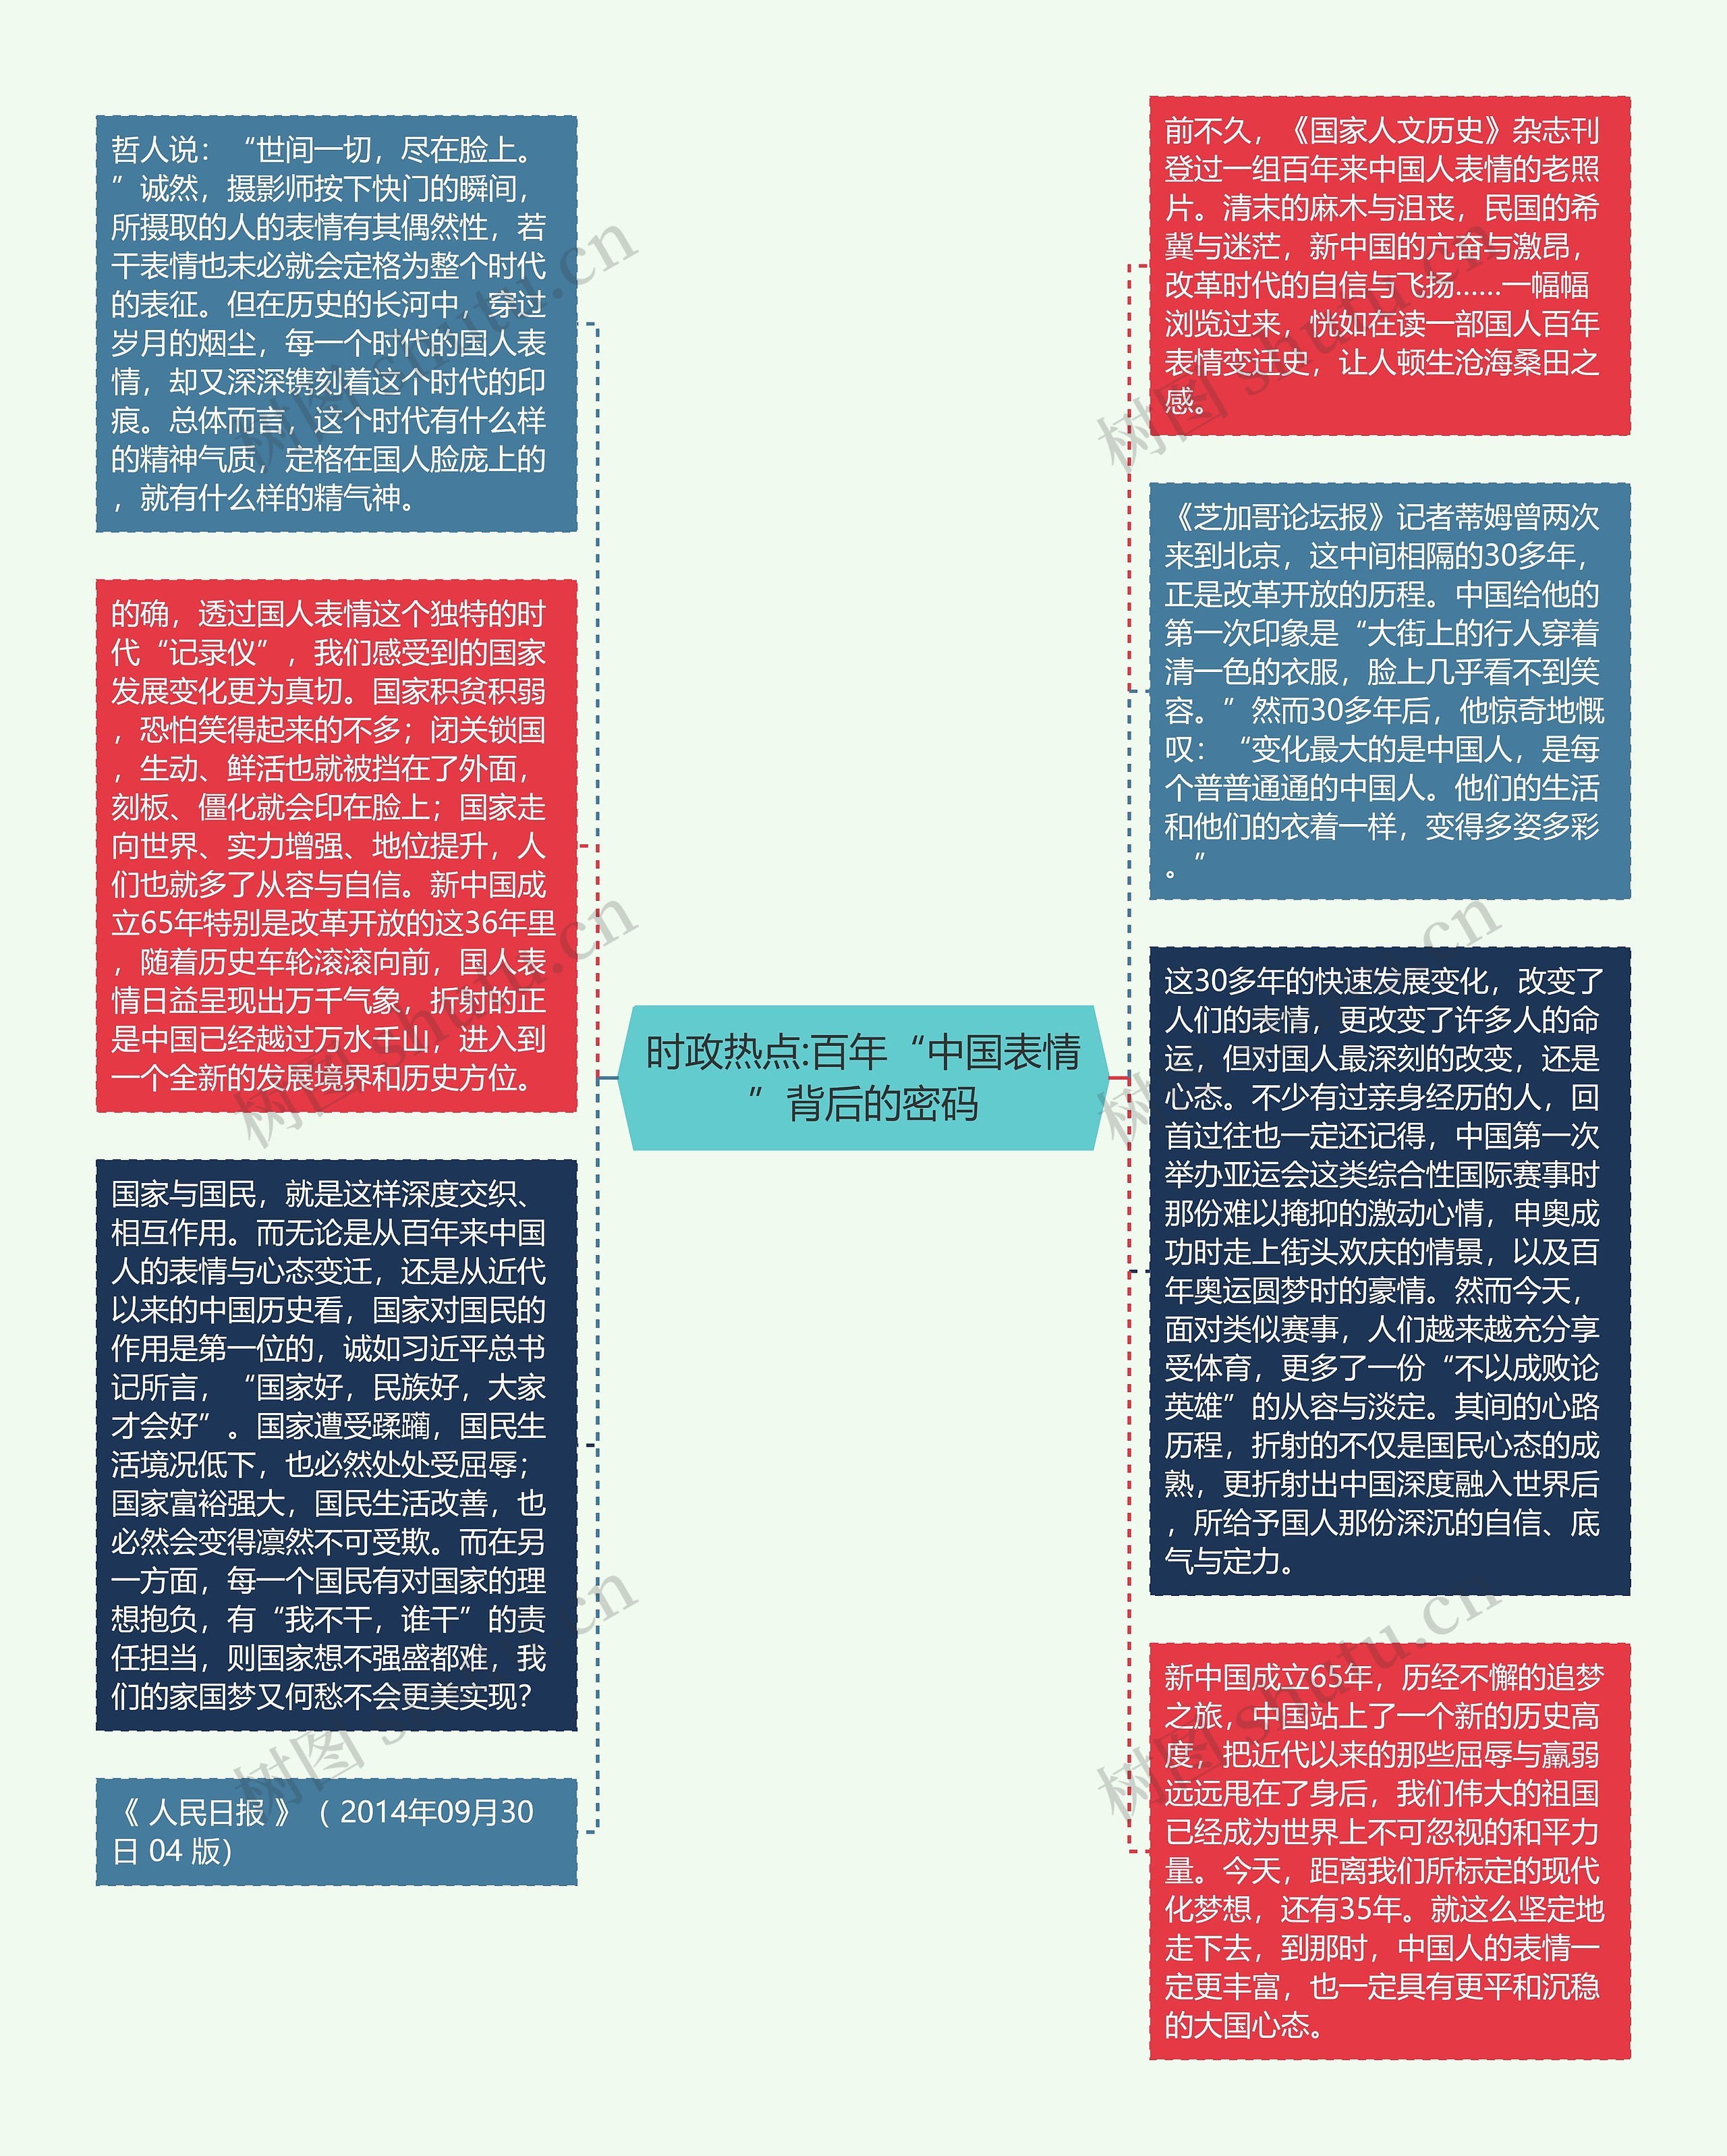 时政热点:百年“中国表情”背后的密码思维导图